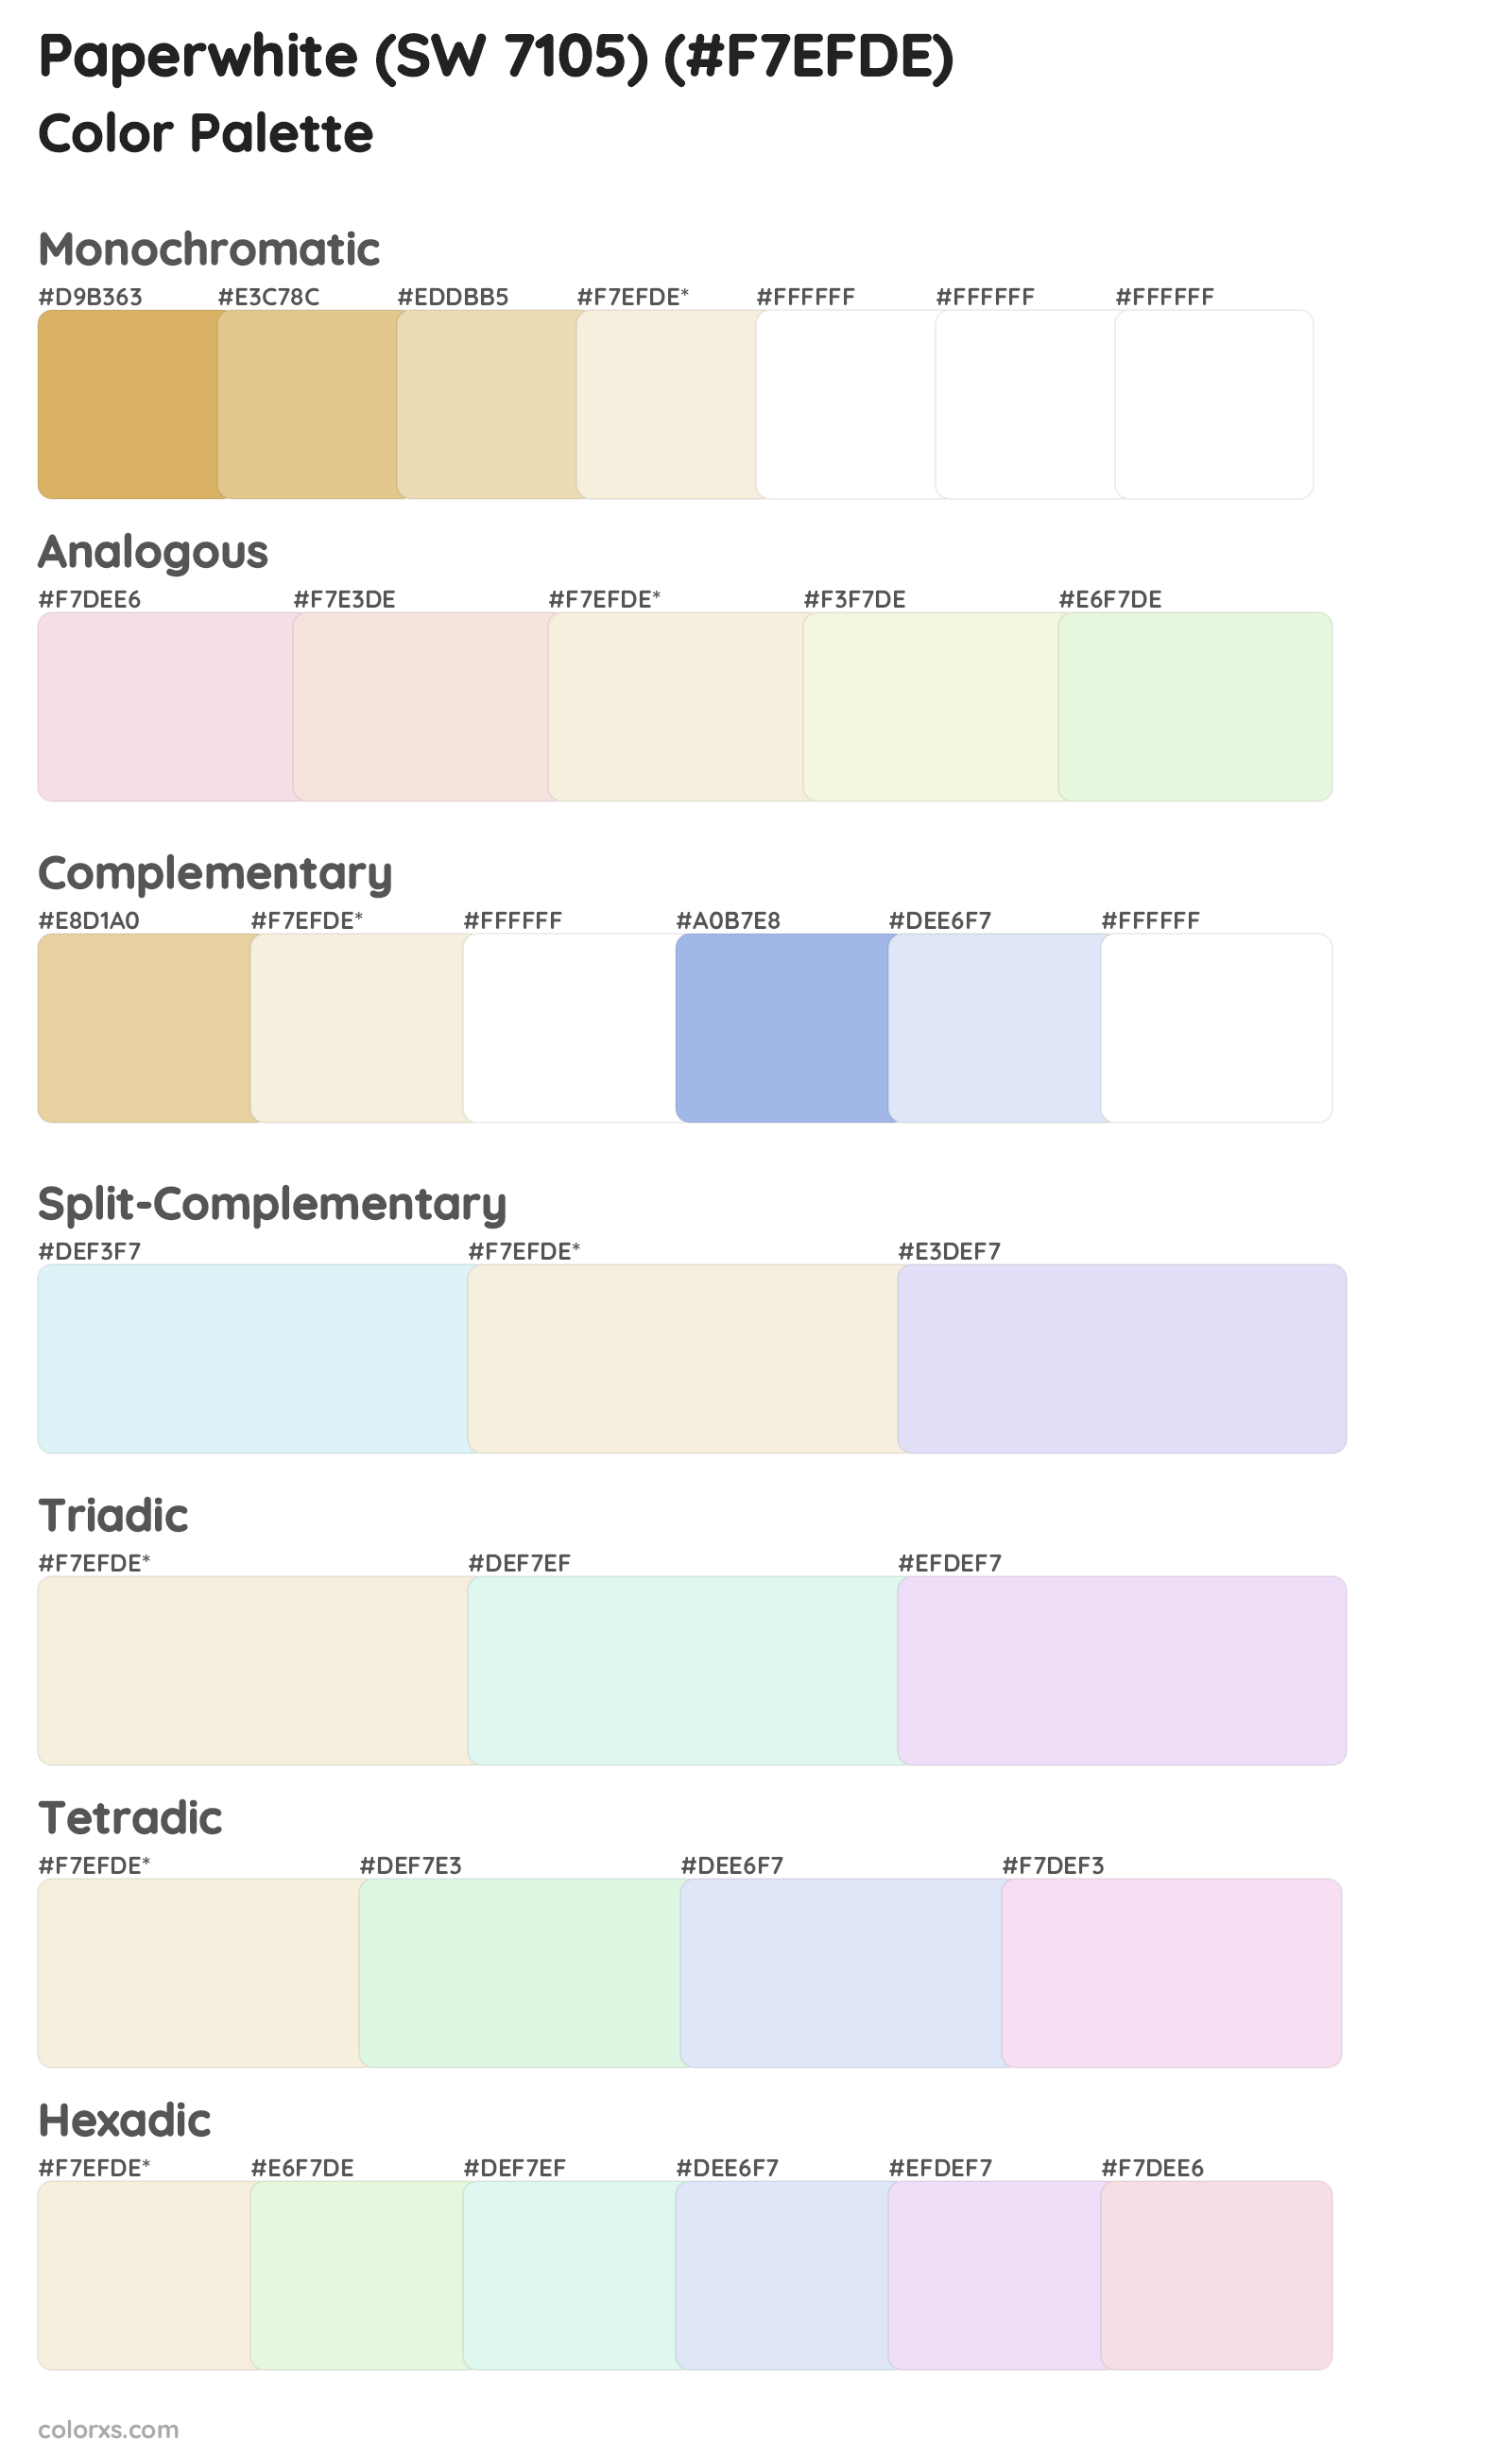 Paperwhite (SW 7105) Color Scheme Palettes